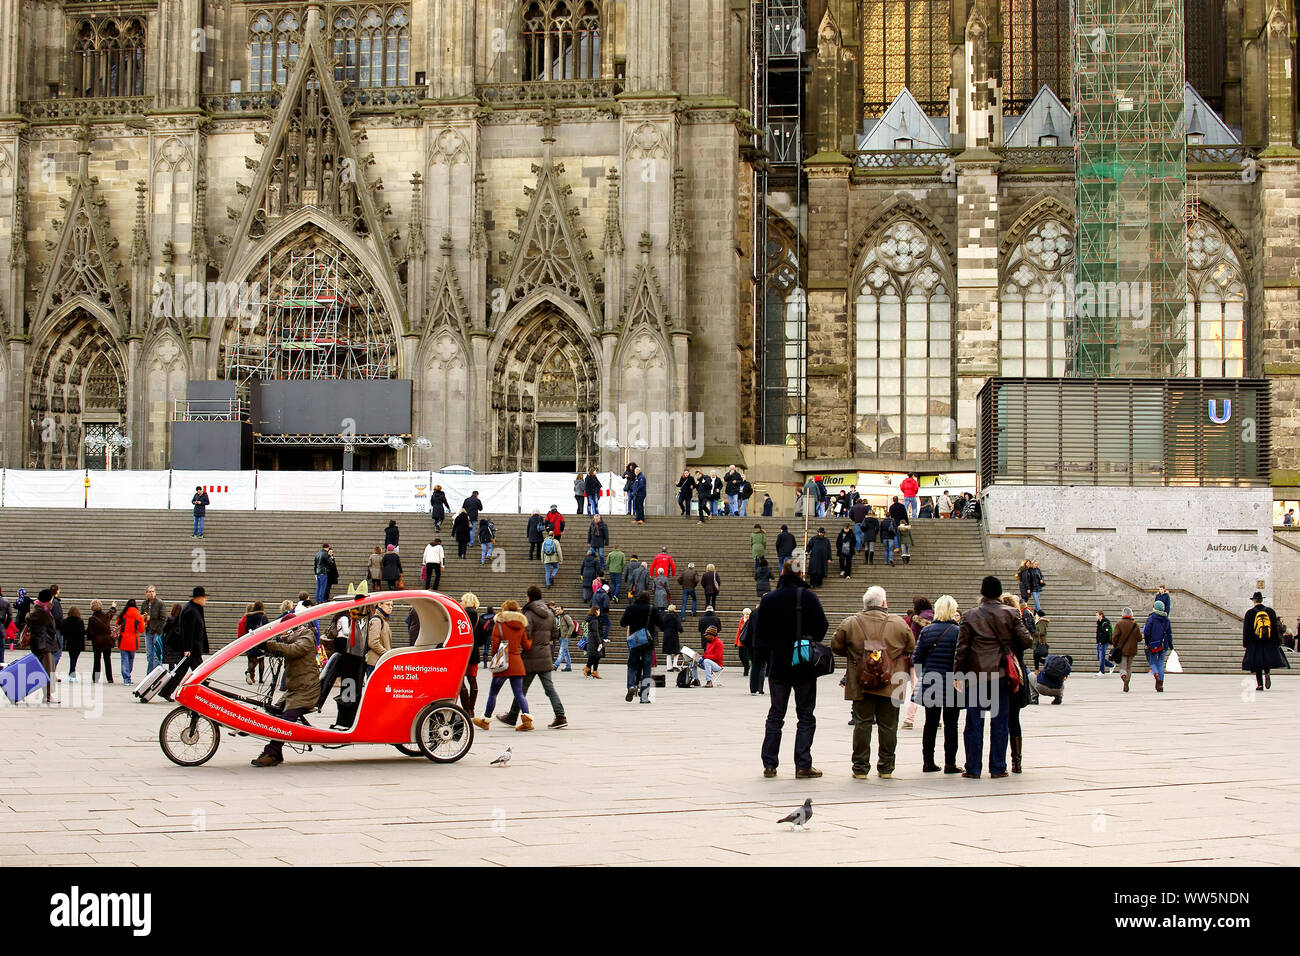 Touristen, Reisende und einer Velo-rikscha auf dem Bahnhofsvorplatz vor dem Kölner Dom. Stockfoto